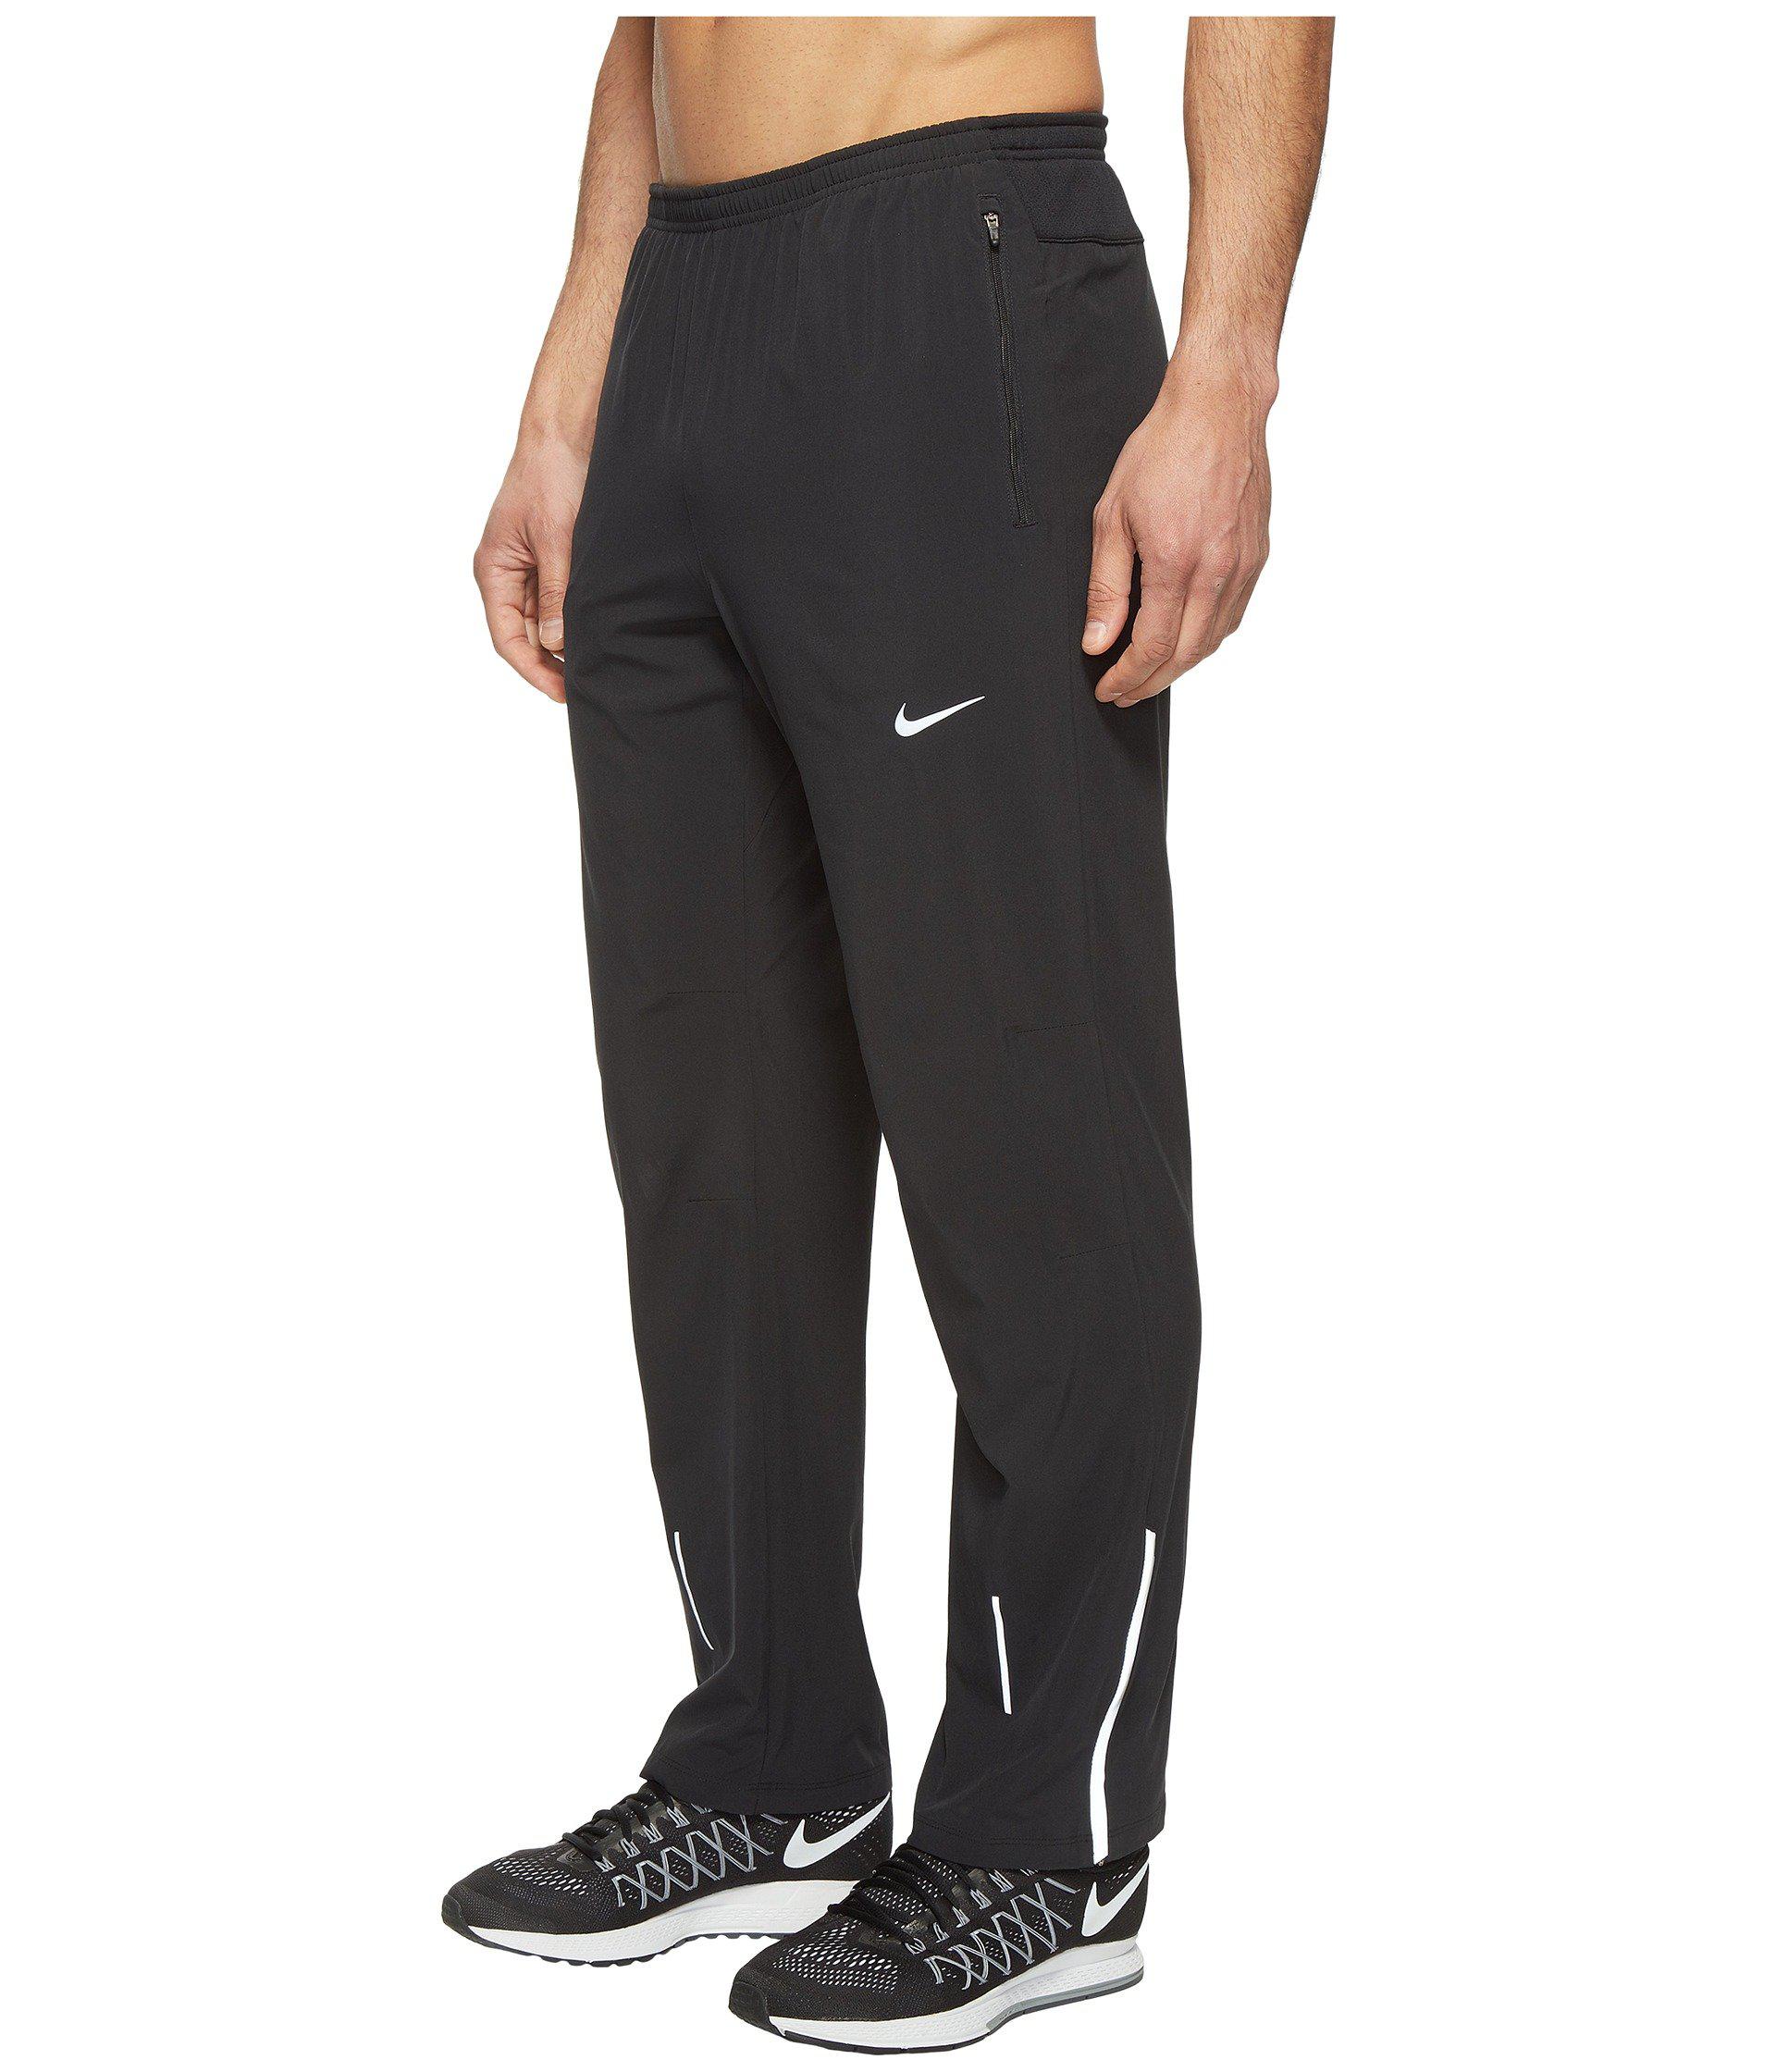 Lyst - Nike Flex Running Pant in Black for Men